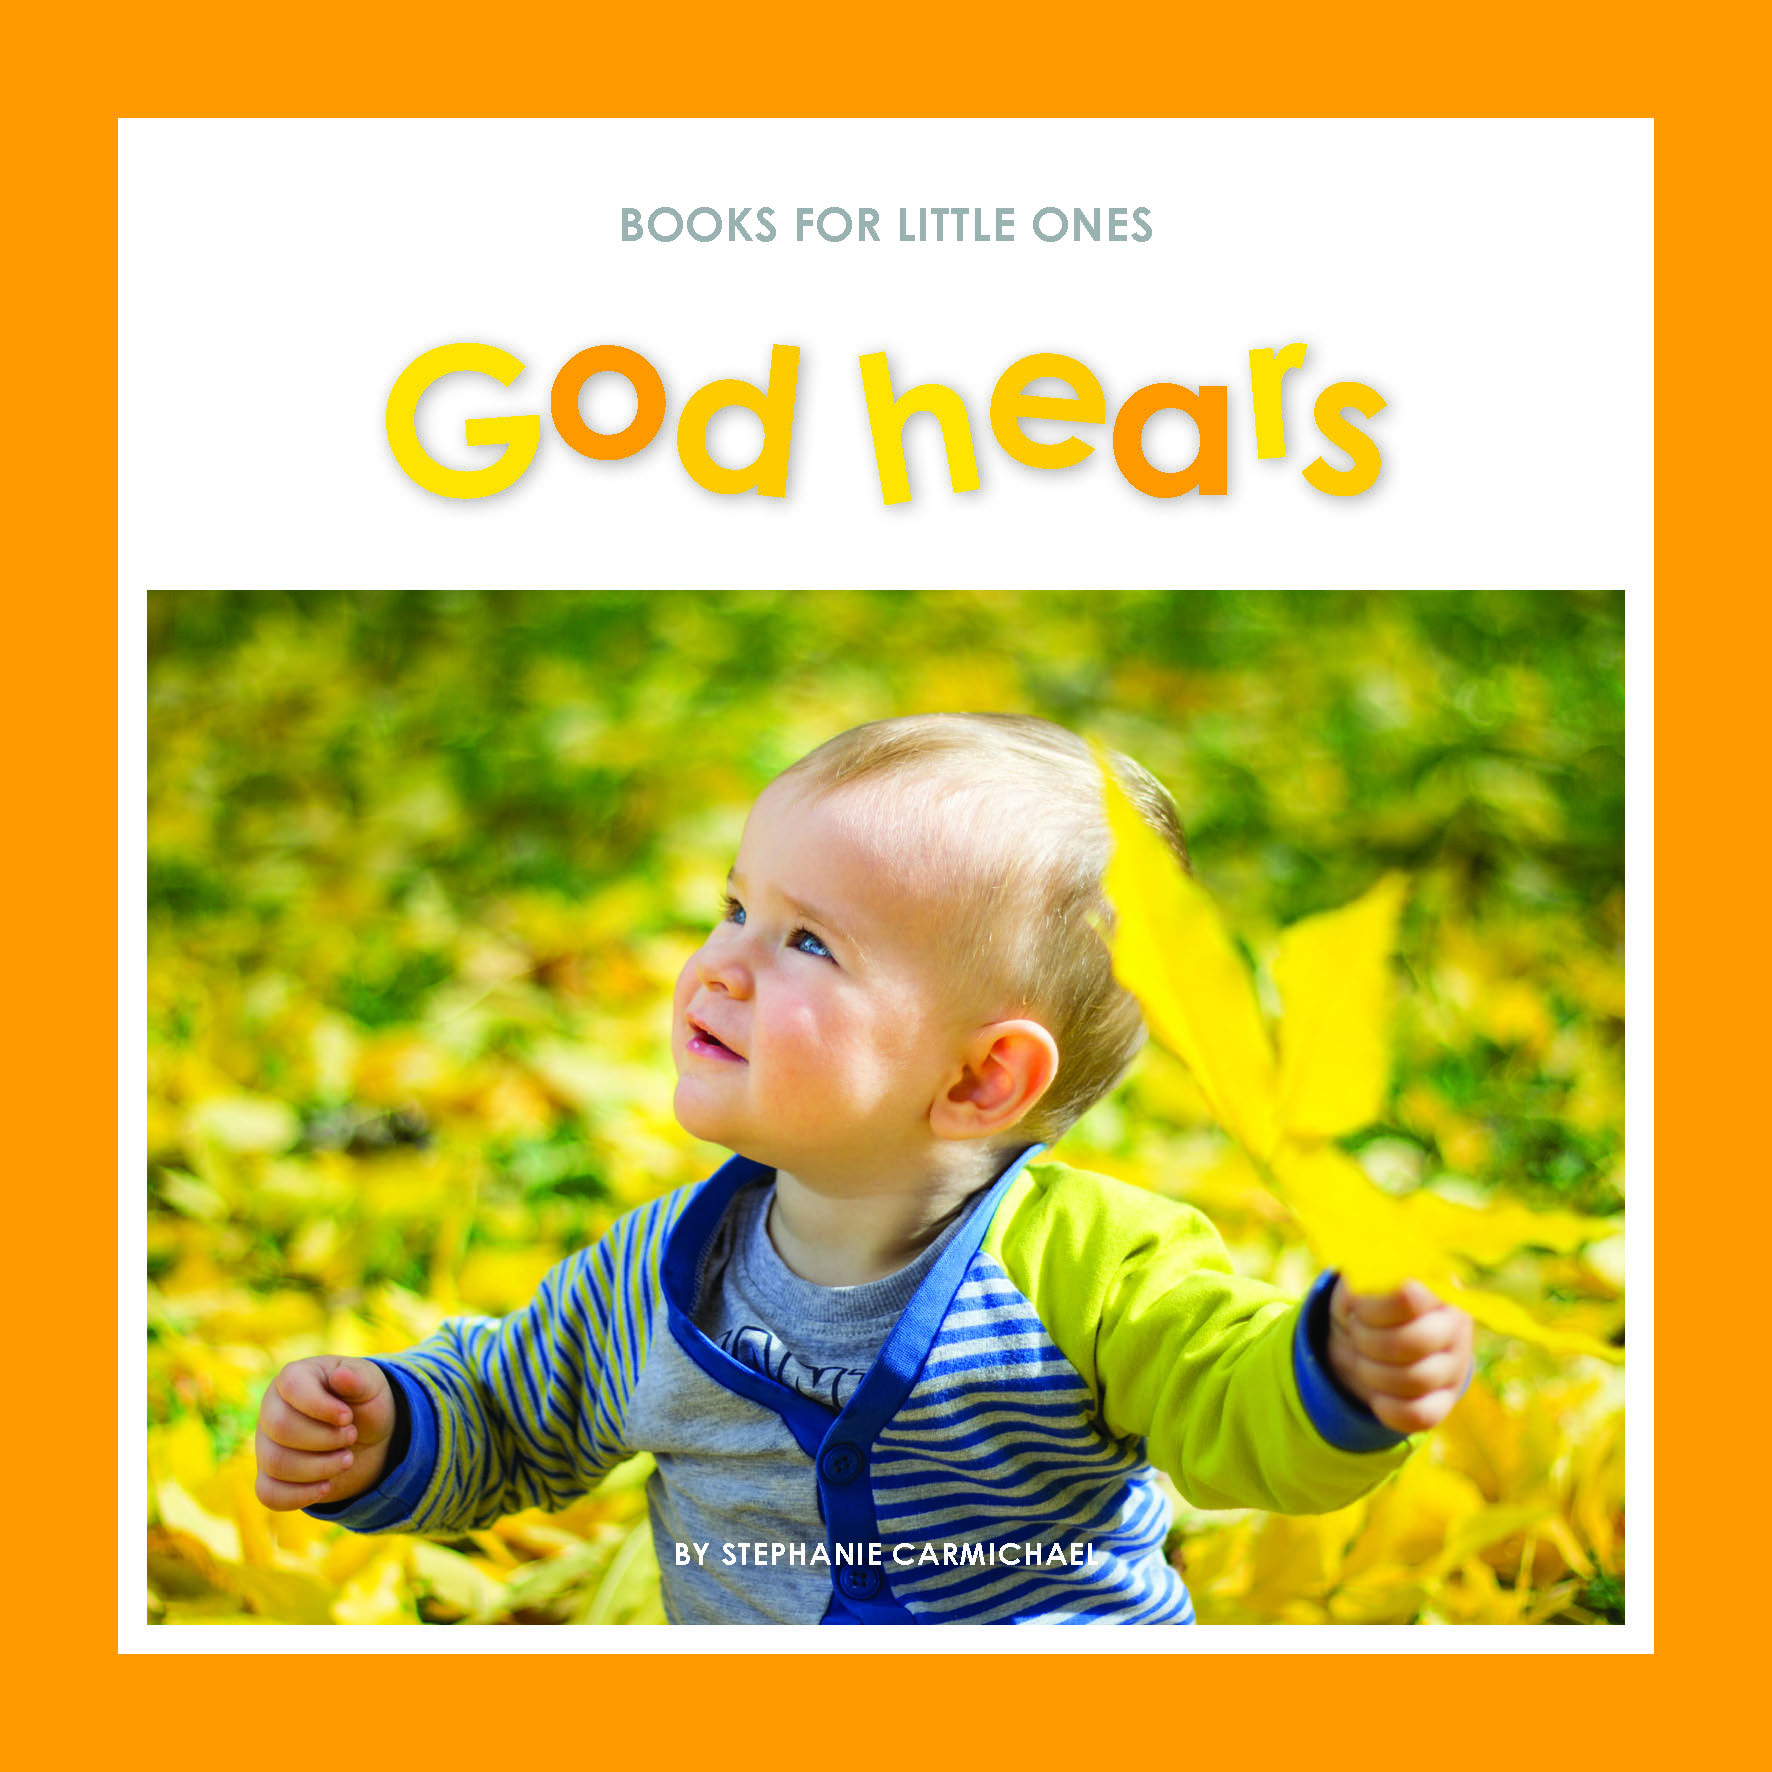 Books for Little Ones - God hears